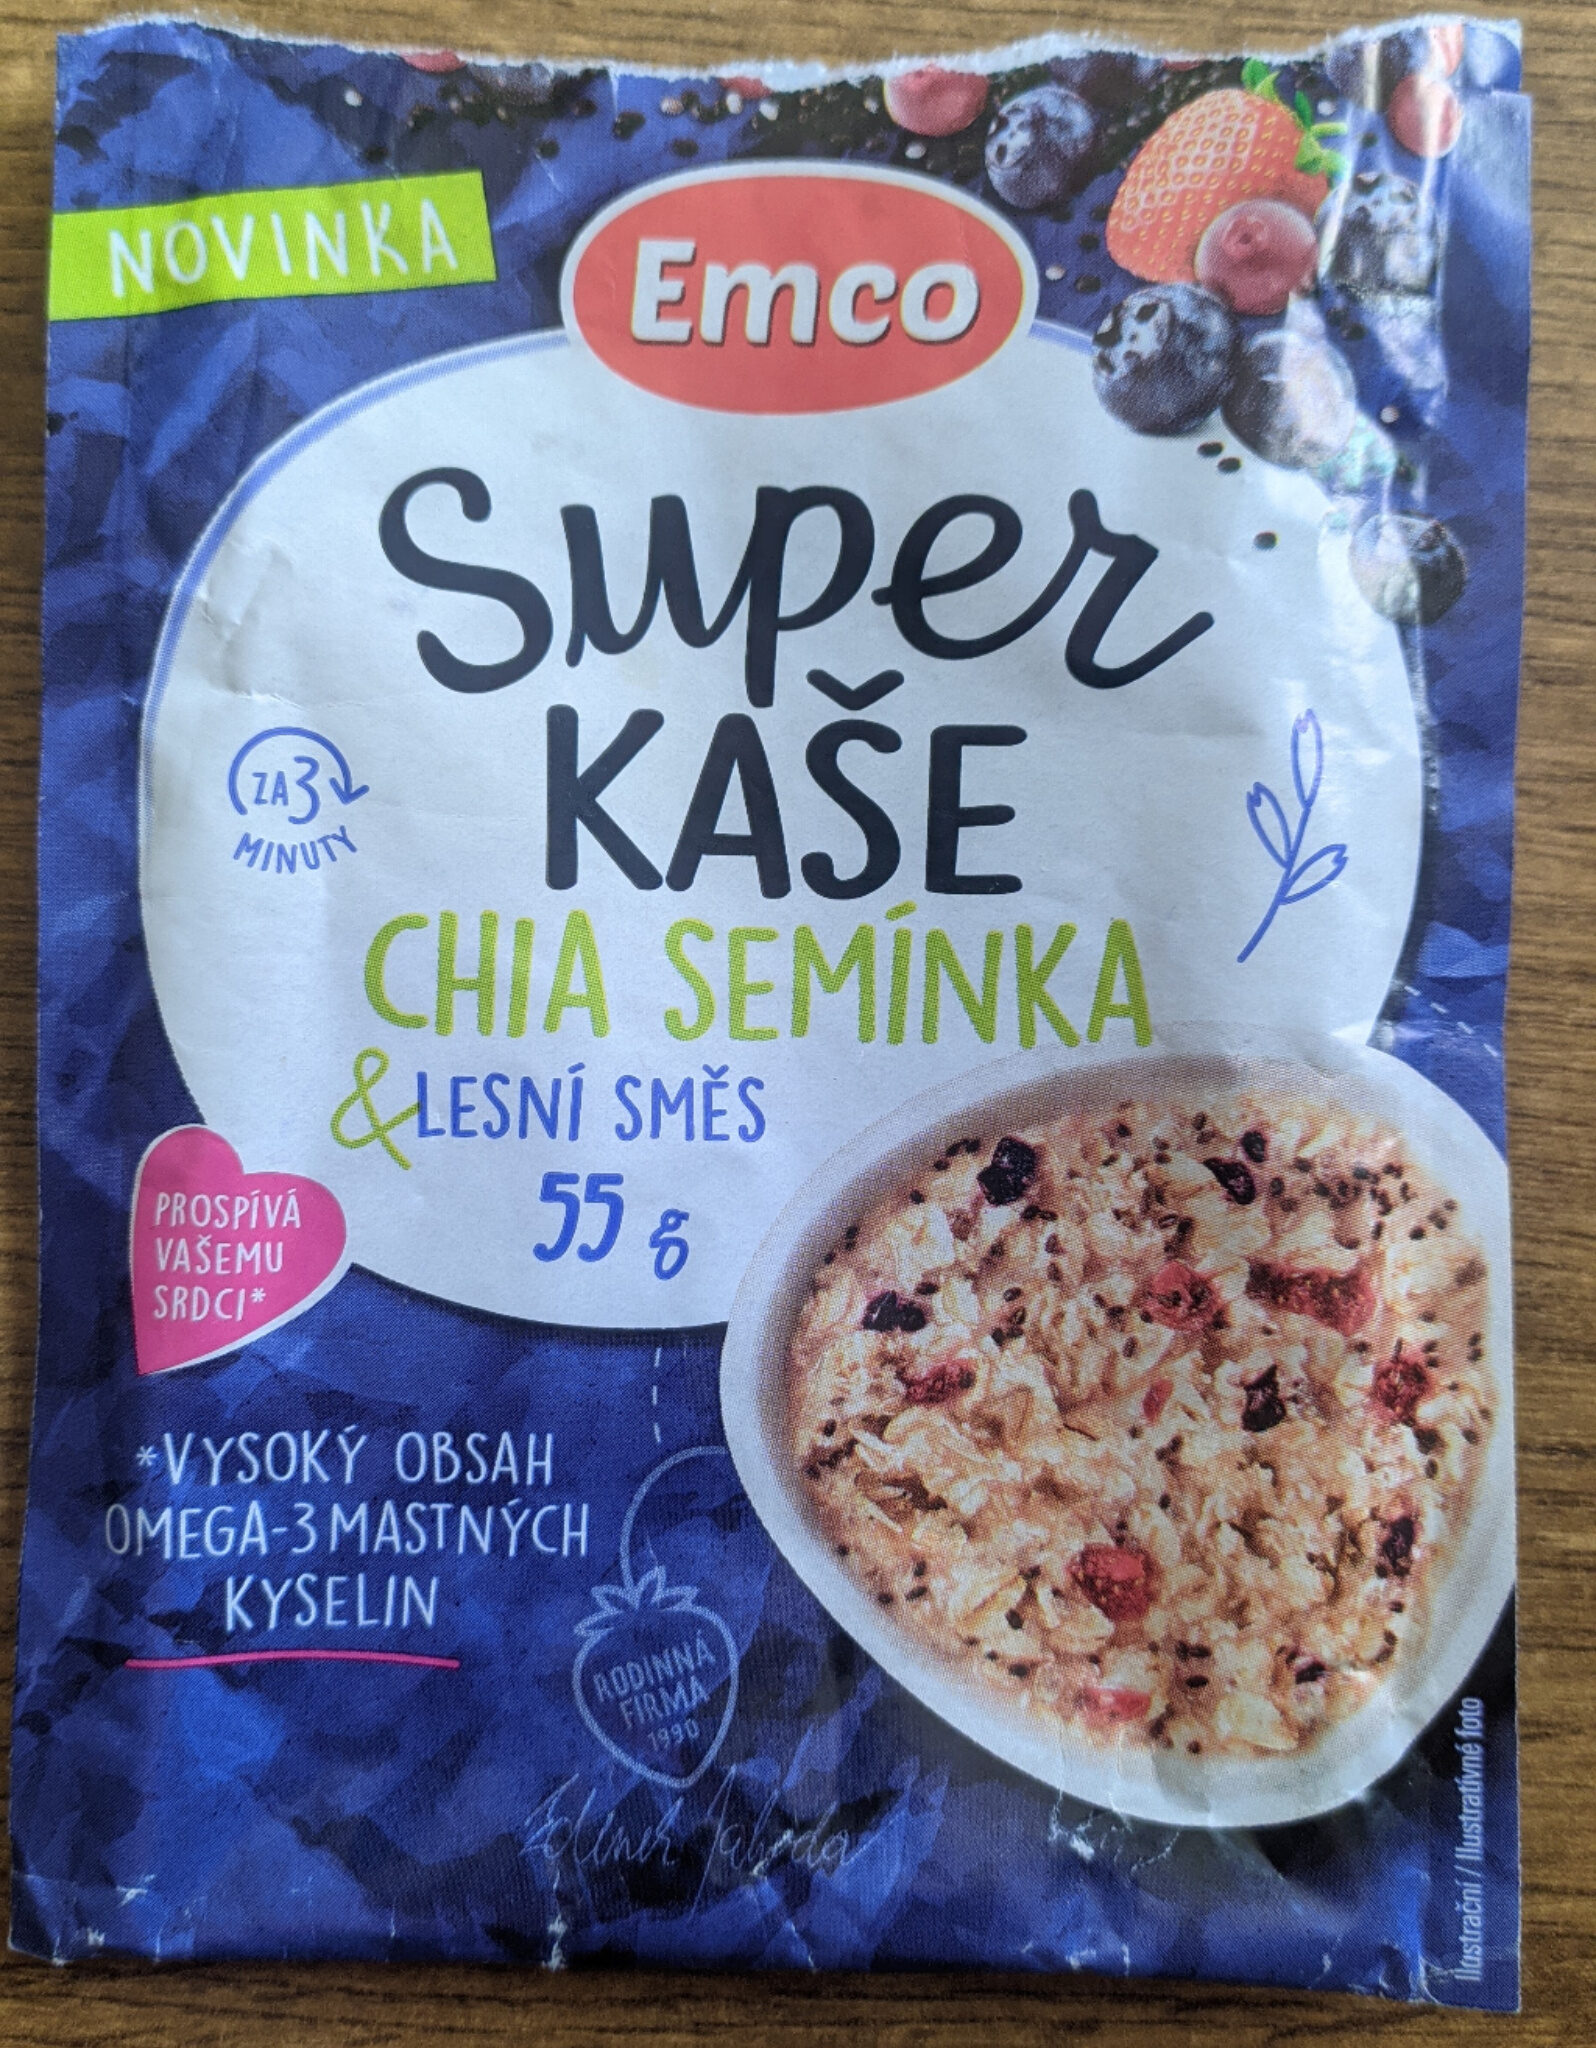 Super Kaše Chia Semínka & Lesní směs 55 g - Product - cs